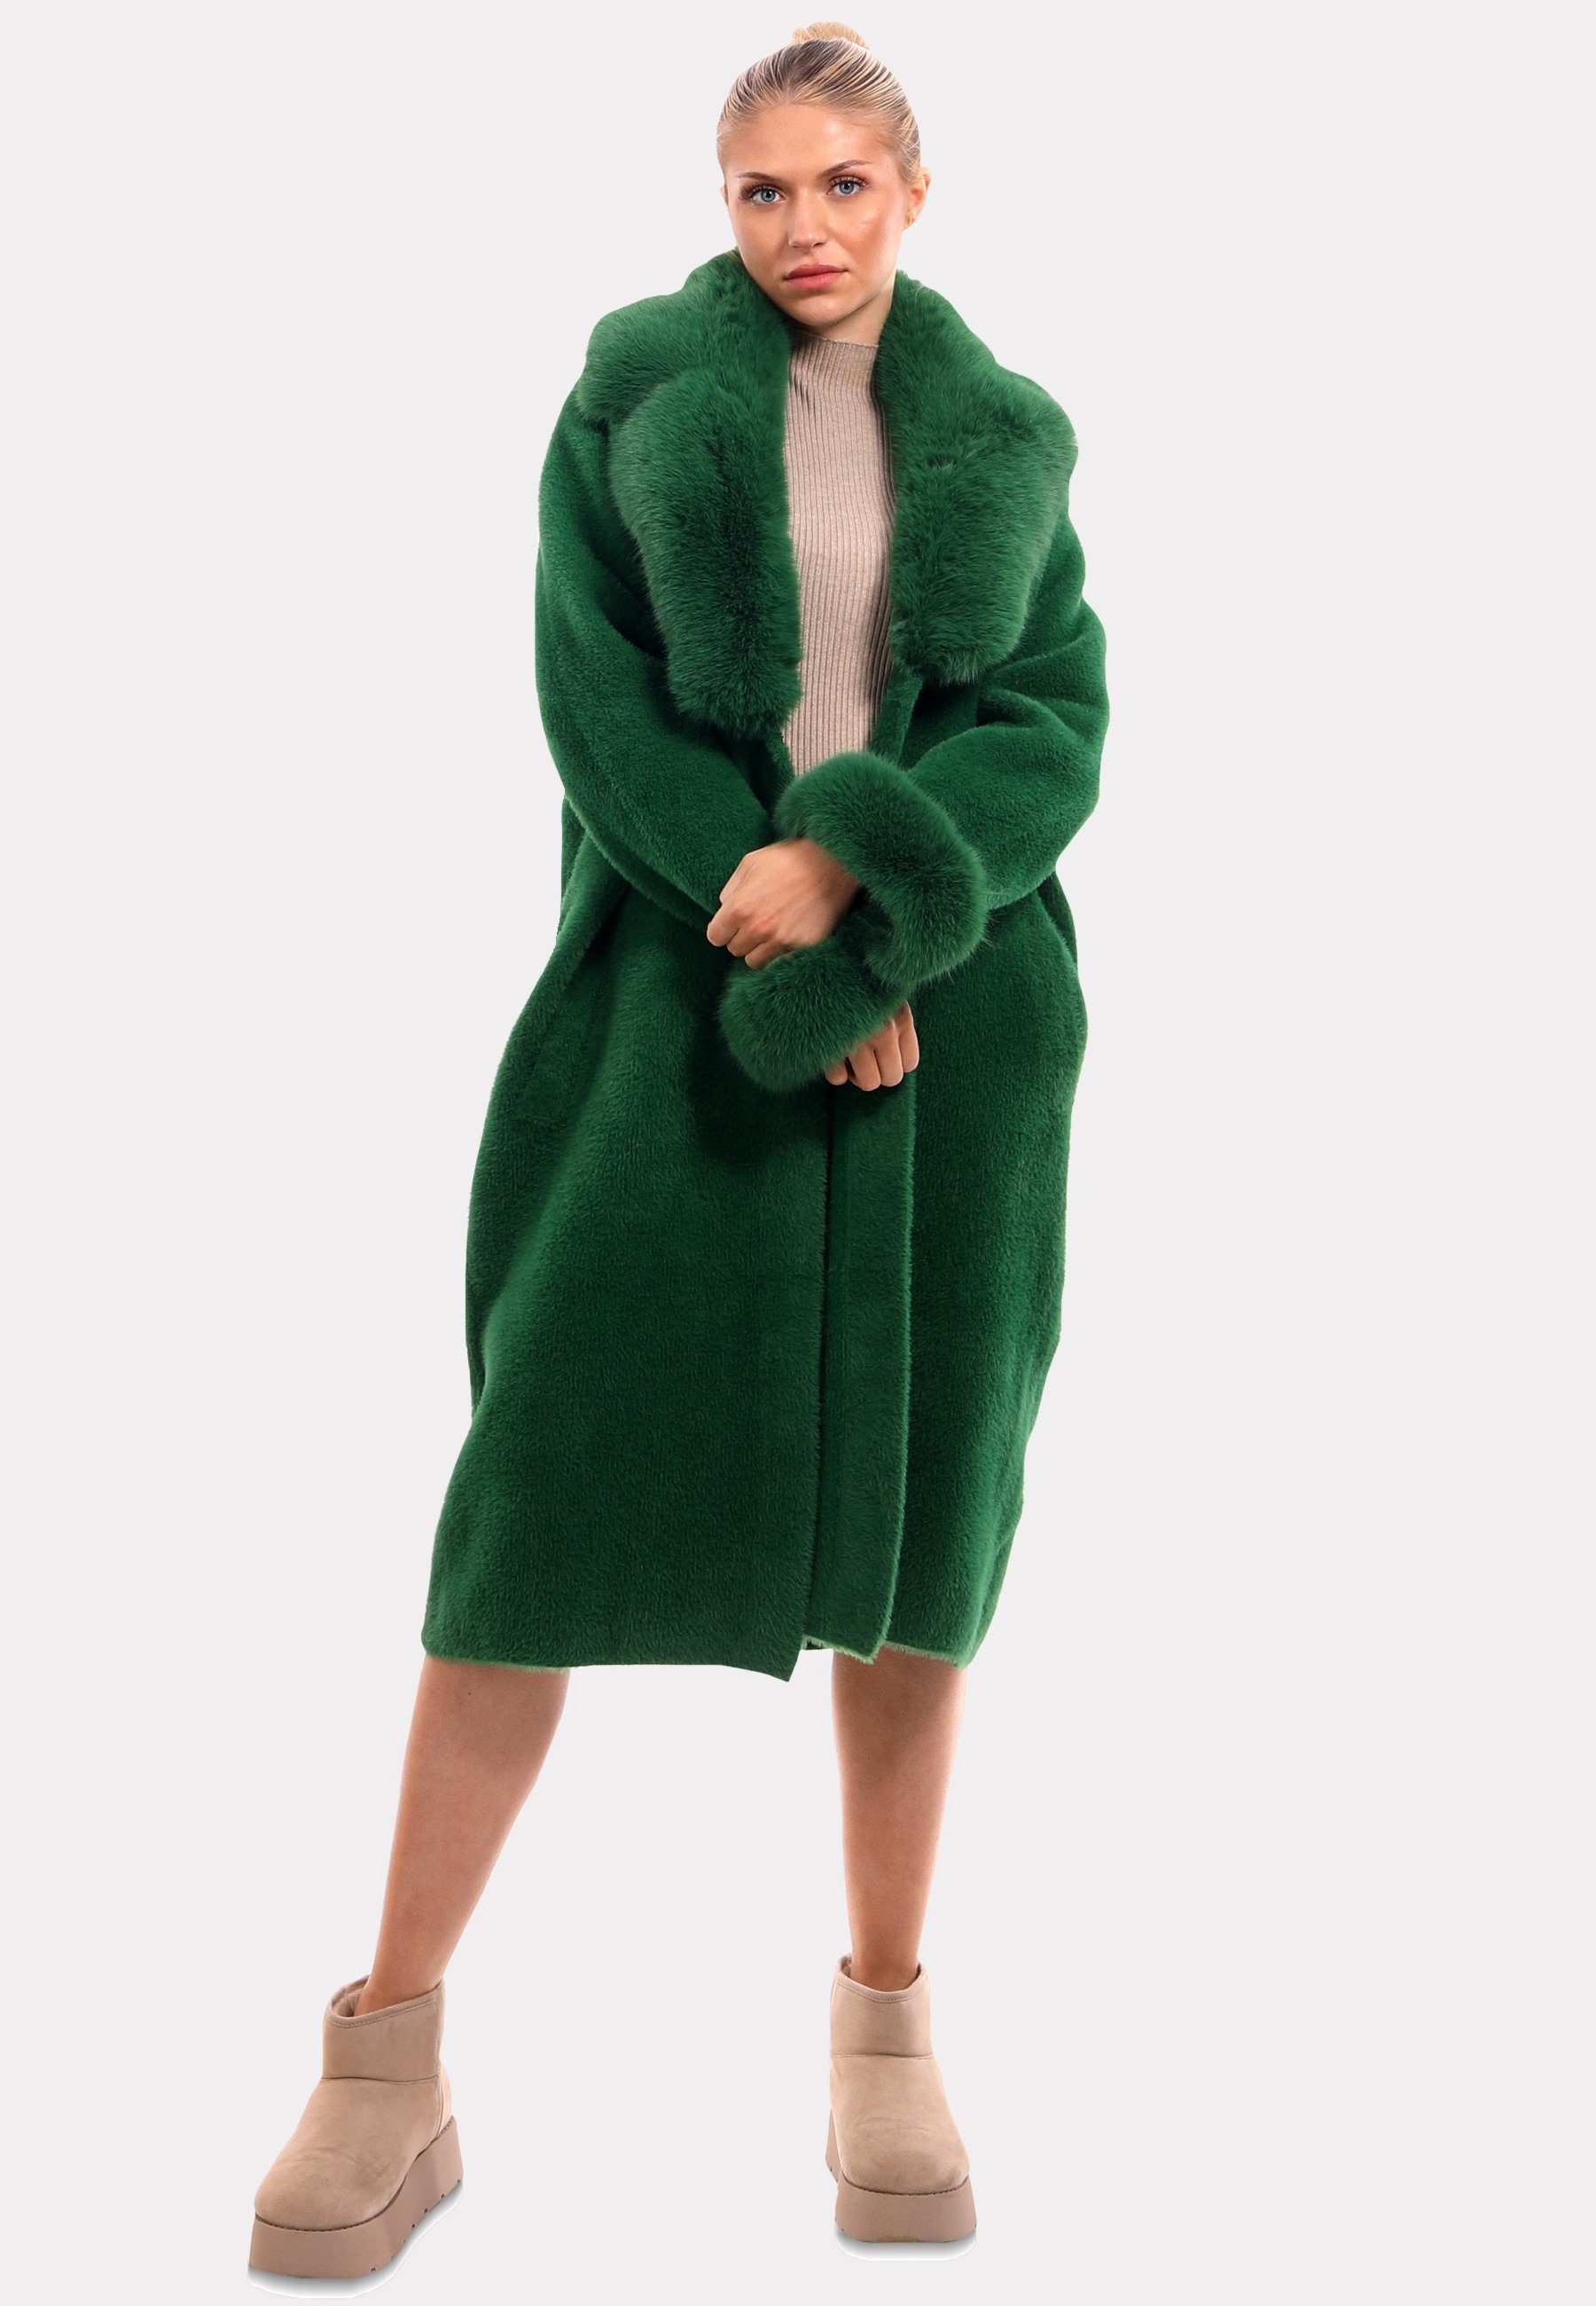 Mantel Kunstpelz-Details" luxuriösem Fashion mit YC & grün Poncho "Exquisiter Style